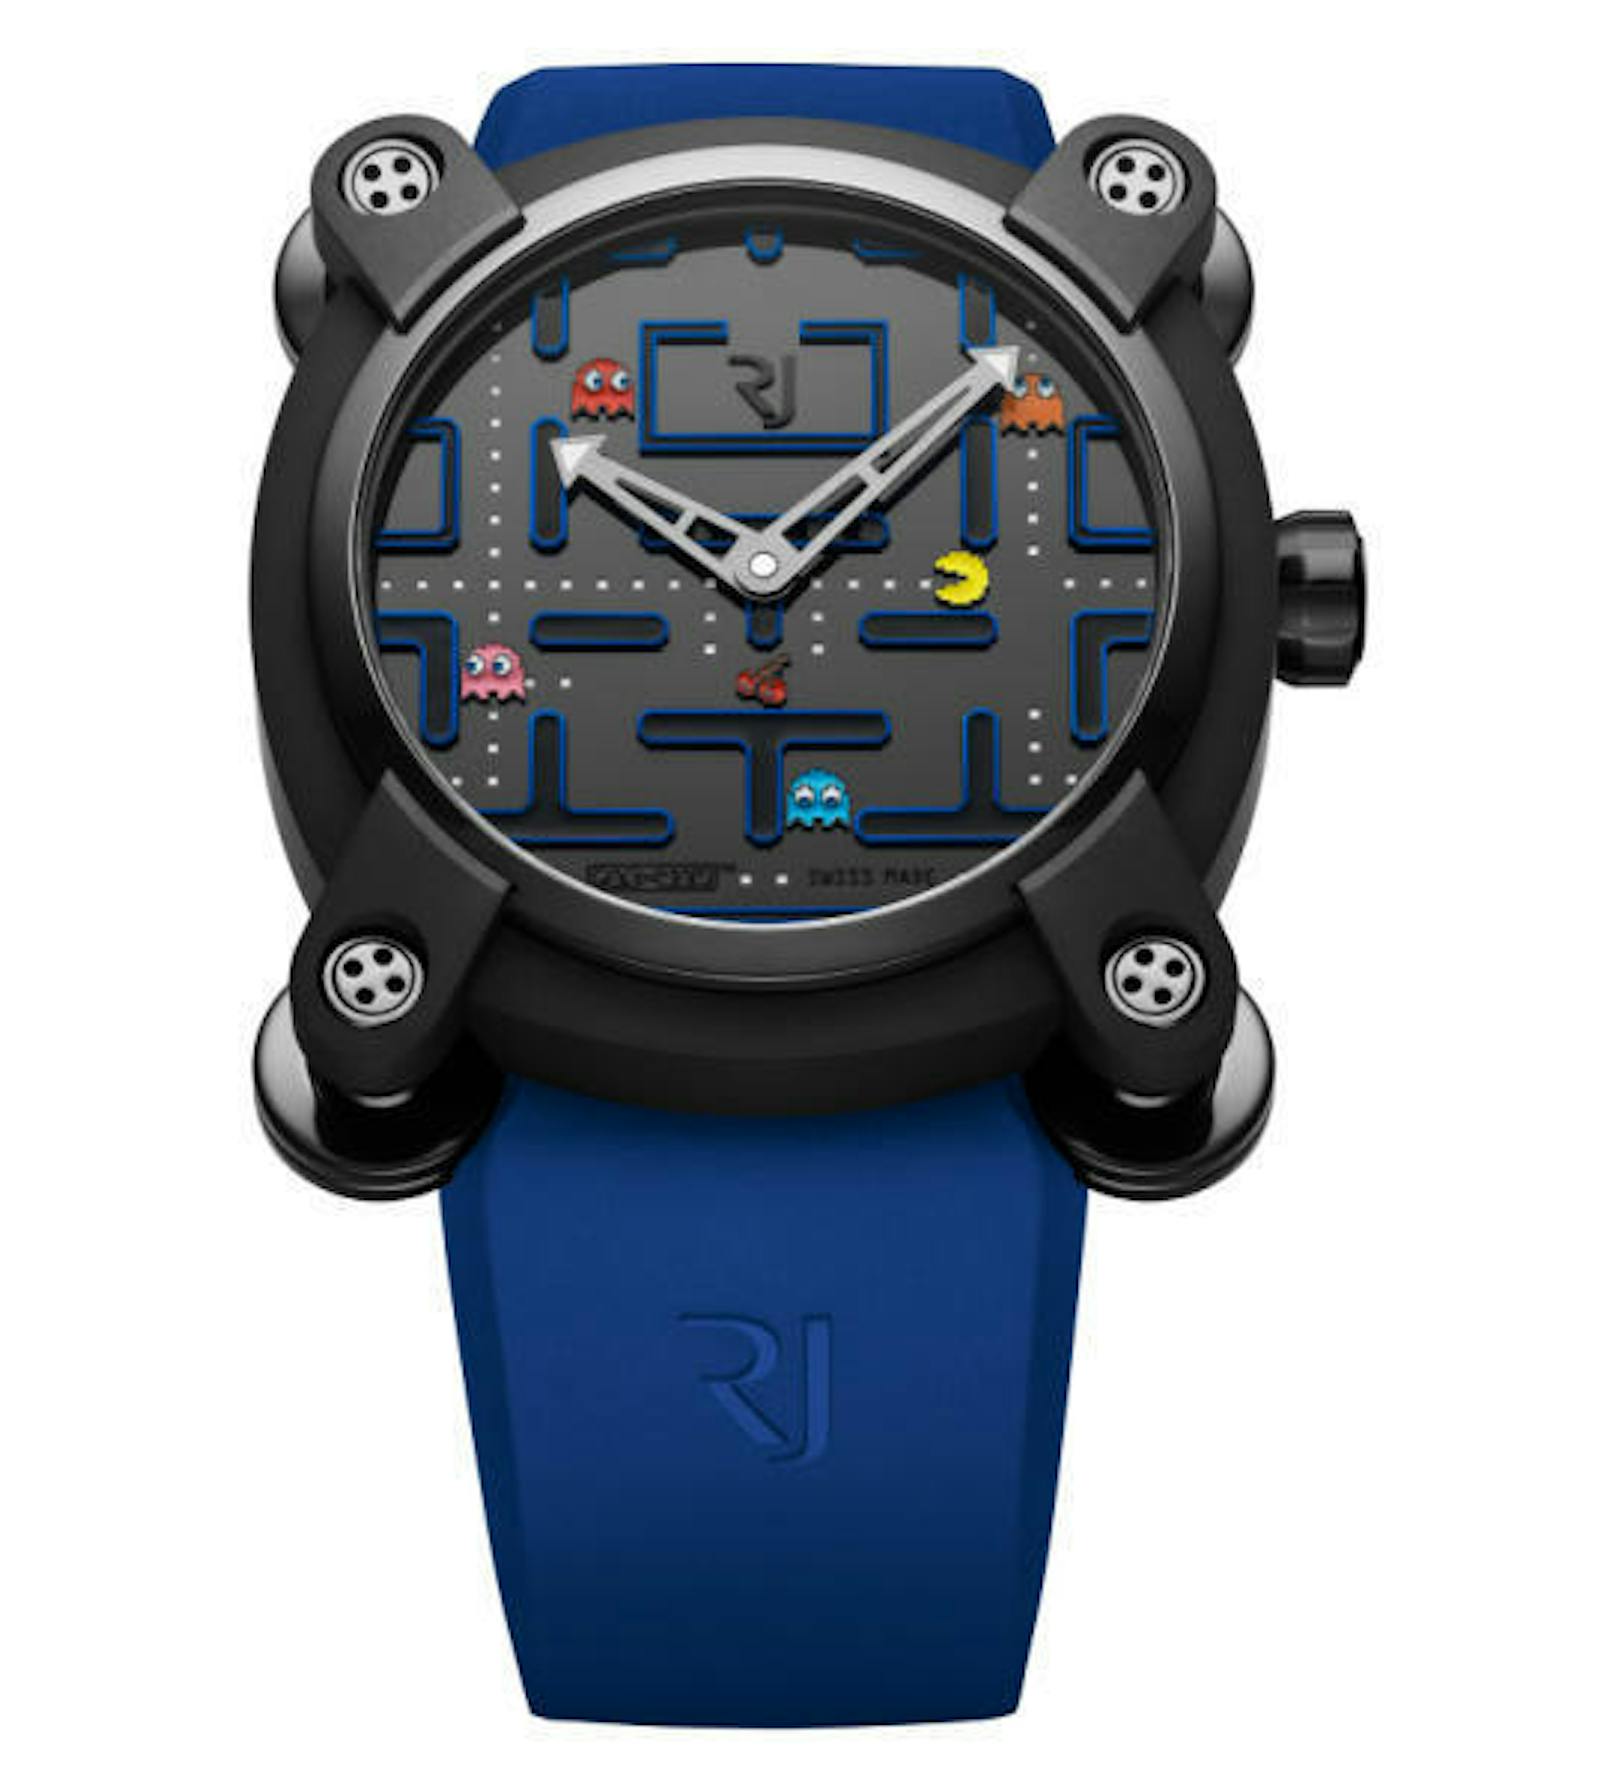 <b>23. Mai 2018:</b> Die Genfer Uhrmacher von Romain Jerome (RJ) haben eine neue Uhr für Fans von Retro-Games präsentiert. Das Modell Level III wurde zusammen mit Bandai Namco entwickelt. Die Uhr zeigt auf dem Zifferblatt den Klassiker "Pac-Man" an. Die statische Spielszene wurde aus insgesamt 27 Komponenten gebaut, schreibt der Hersteller. Die Uhr ist auf 80 Exemplare limitiert und soll ab Juni erhältlich sein. Einen Preis nennt RJ nicht. Die Vorgänger-Modelle, eine "Space Invaders"- sowie eine "Donkey Kong"-Uhr, wurden jeweils für über 14.000 Euro verkauft.